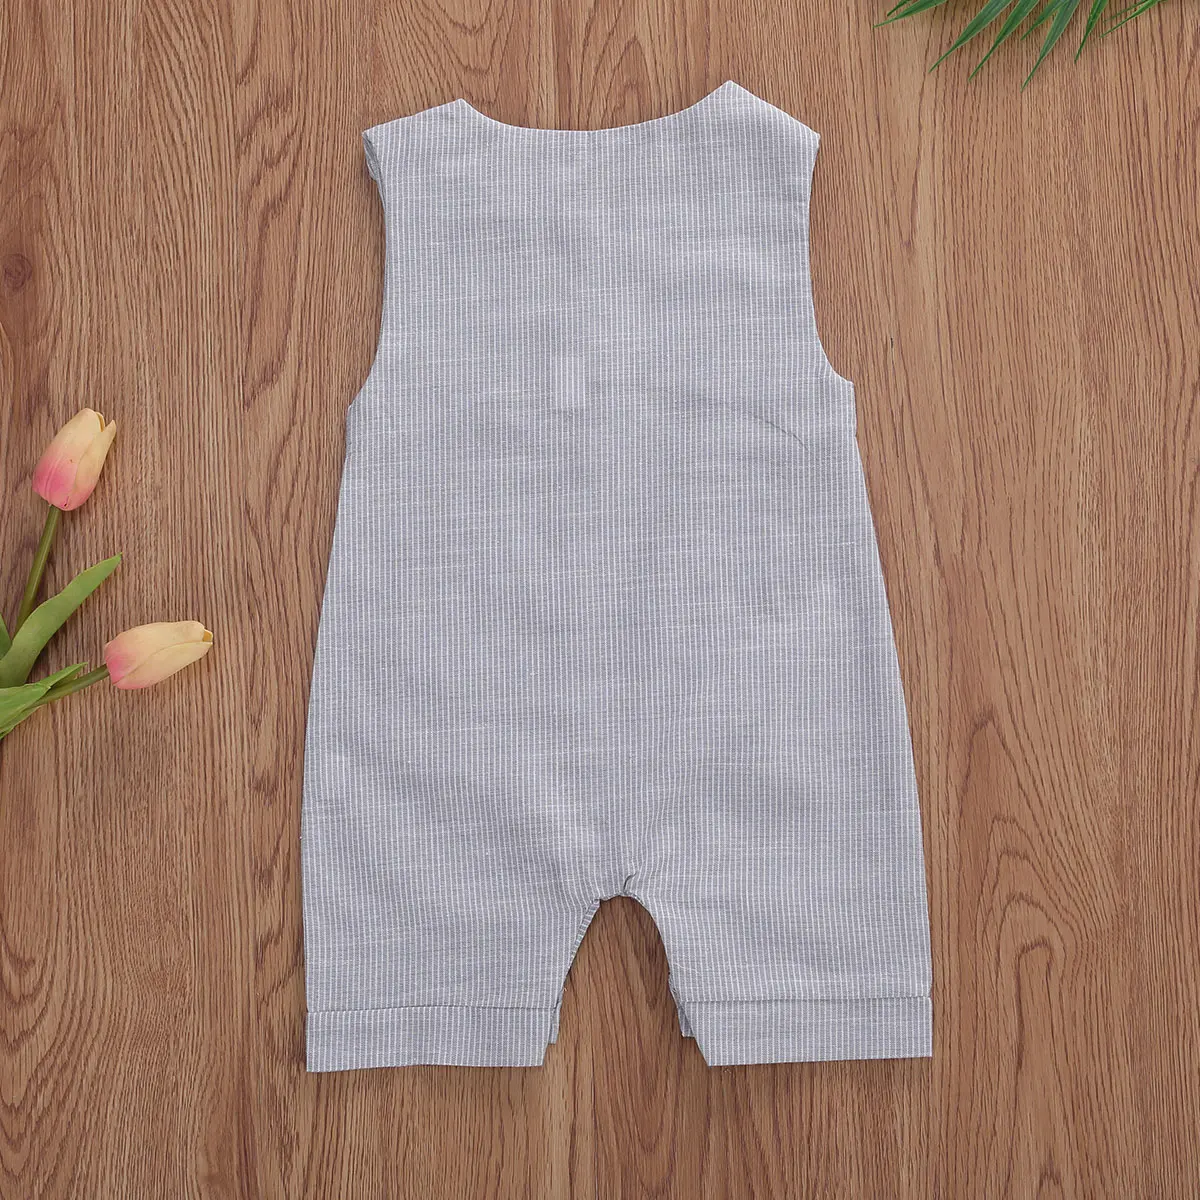 2020 התינוק קיץ בגדי התינוק הנולד בנים כפתורים פסים רומפר אופנה שרוולים רומפר כותנה פשתן סרבל - 5